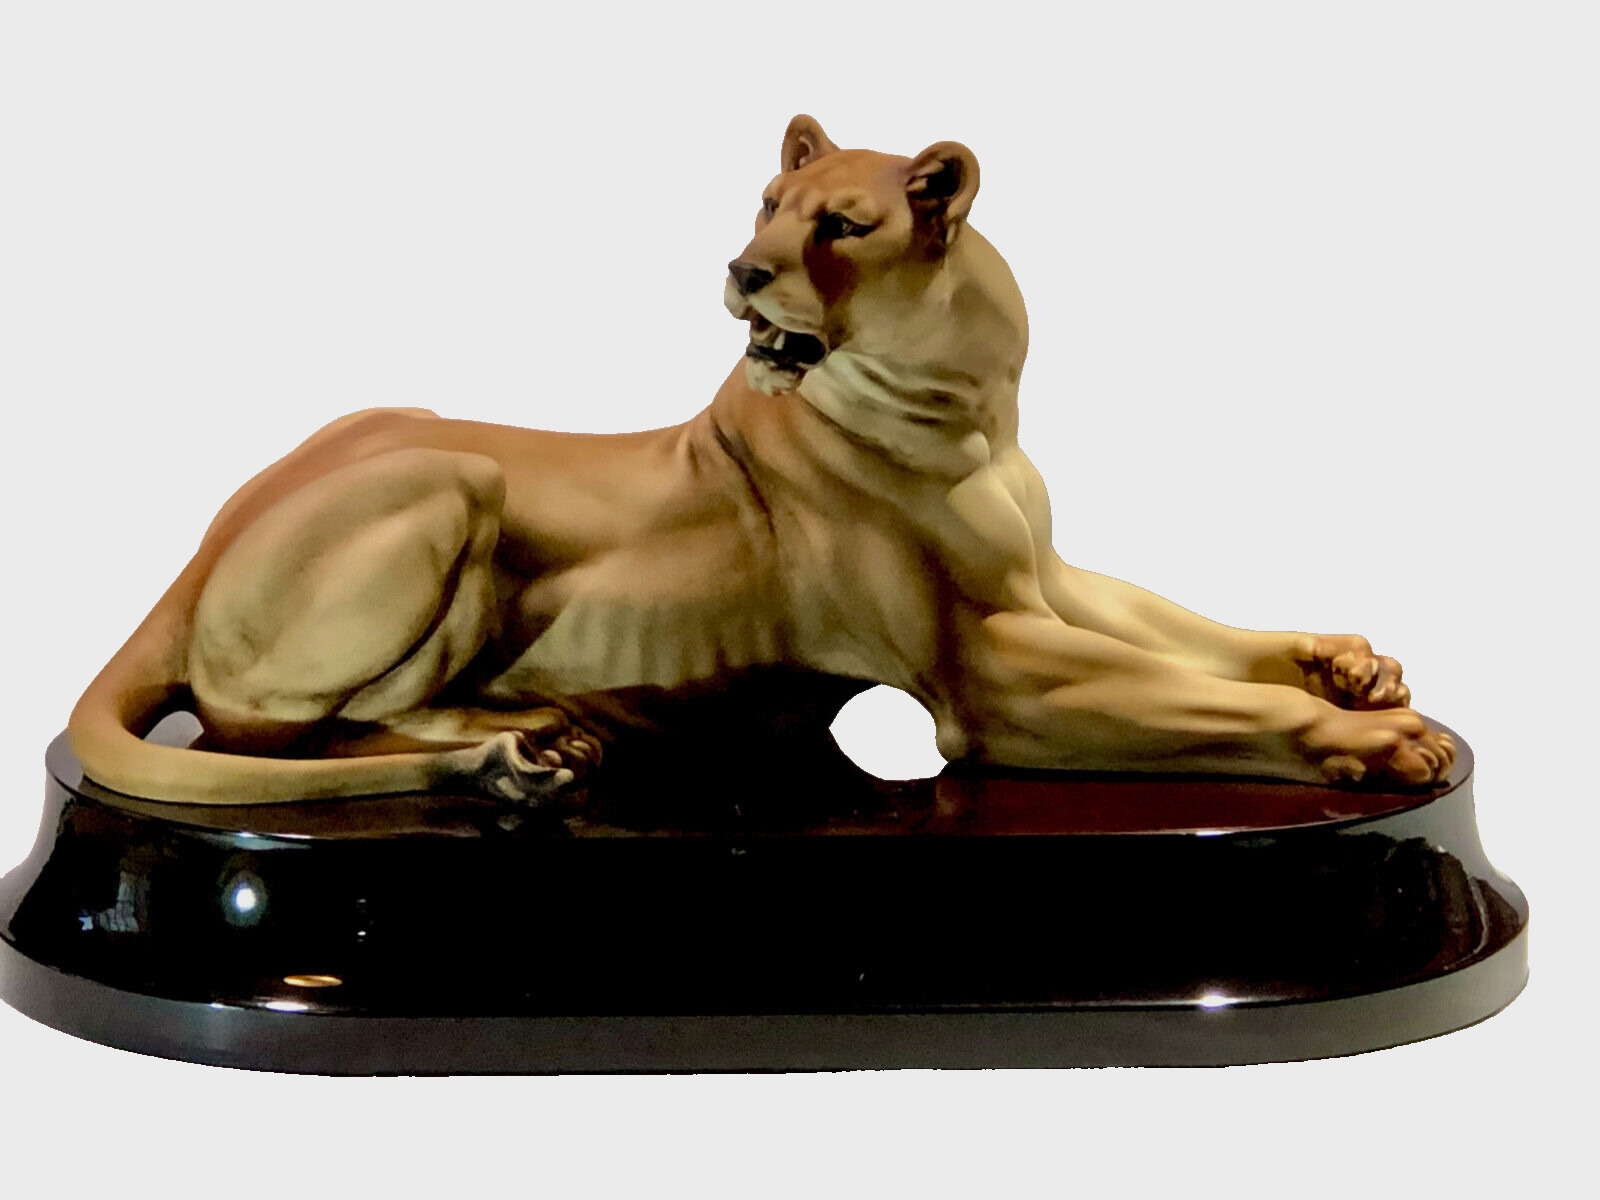 RARE Giuseppe Armani Lioness 1843C Limit Ed Sculpture Italy  COA,  Box & Signed